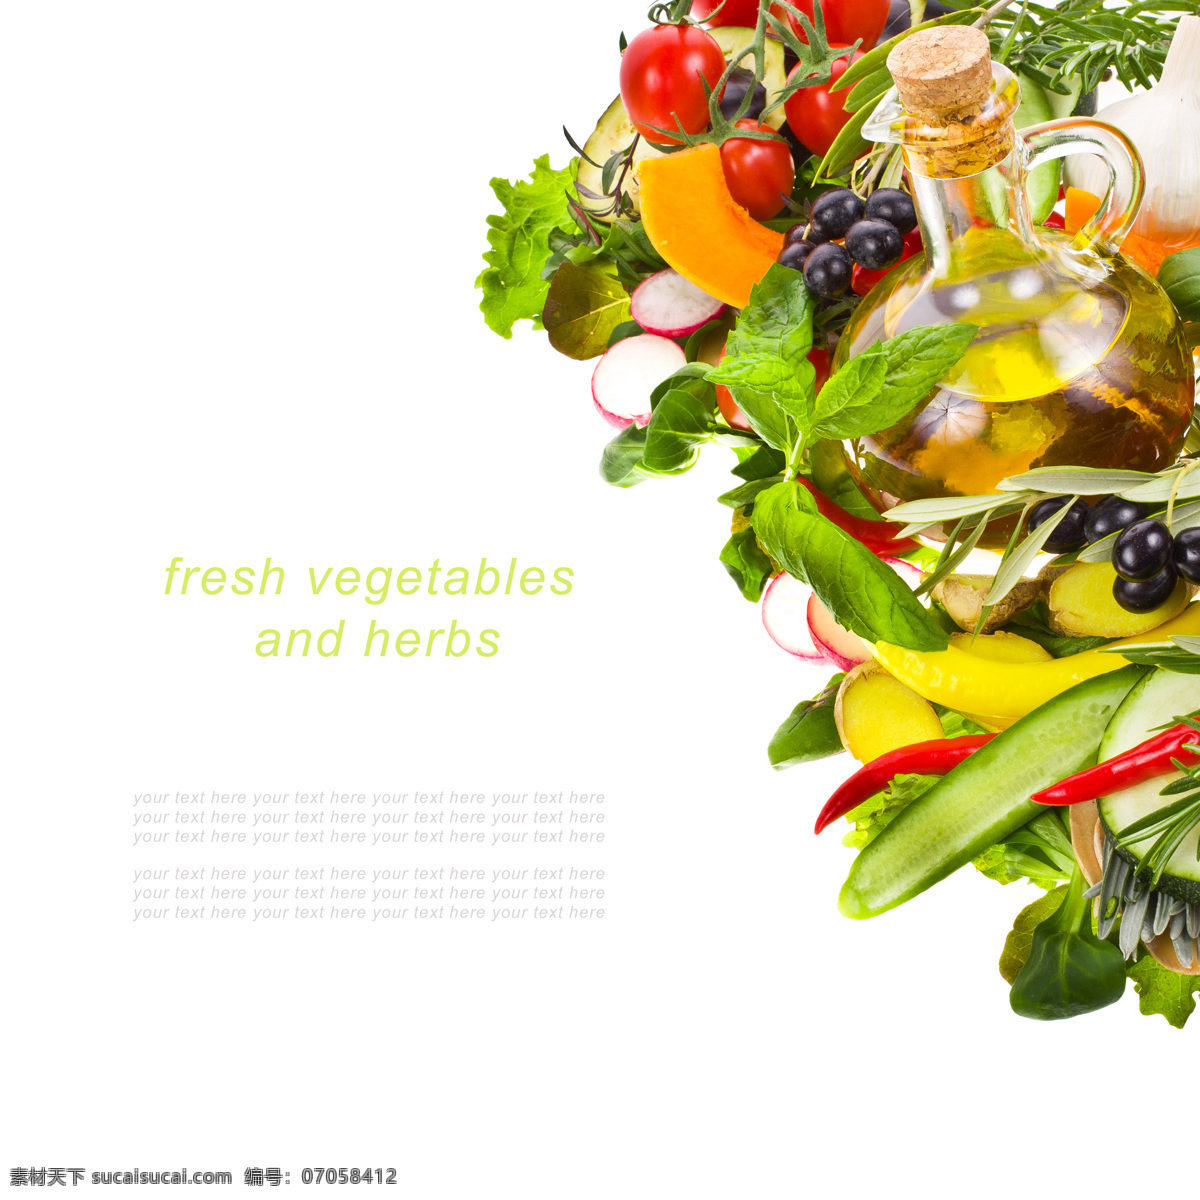 食用油 橄榄 蔬菜 生姜 薄荷 辣椒 番茄 西红柿 新鲜蔬菜 蔬菜摄影 水果蔬菜 餐饮美食 白色